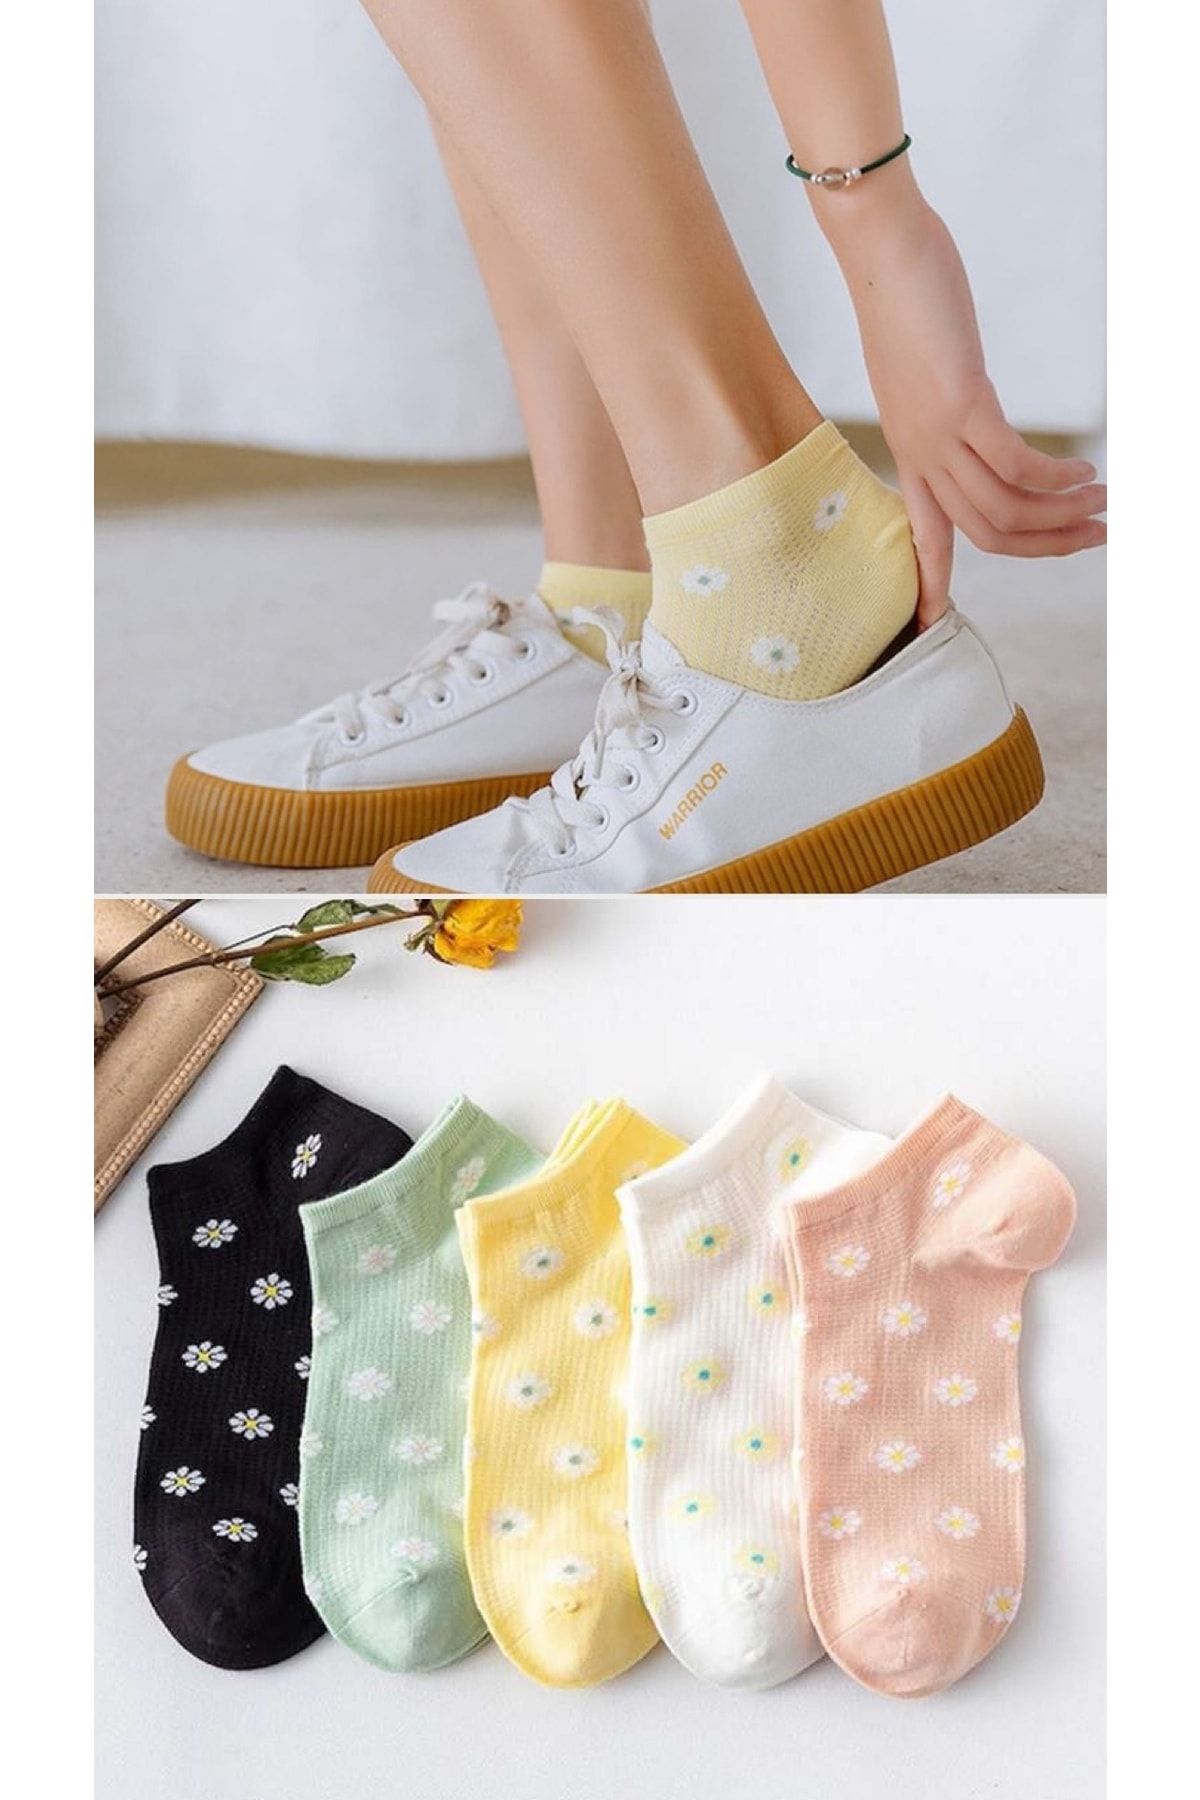 BGK Kadın Renkli Papatya Desenli Patik Çorap Seti